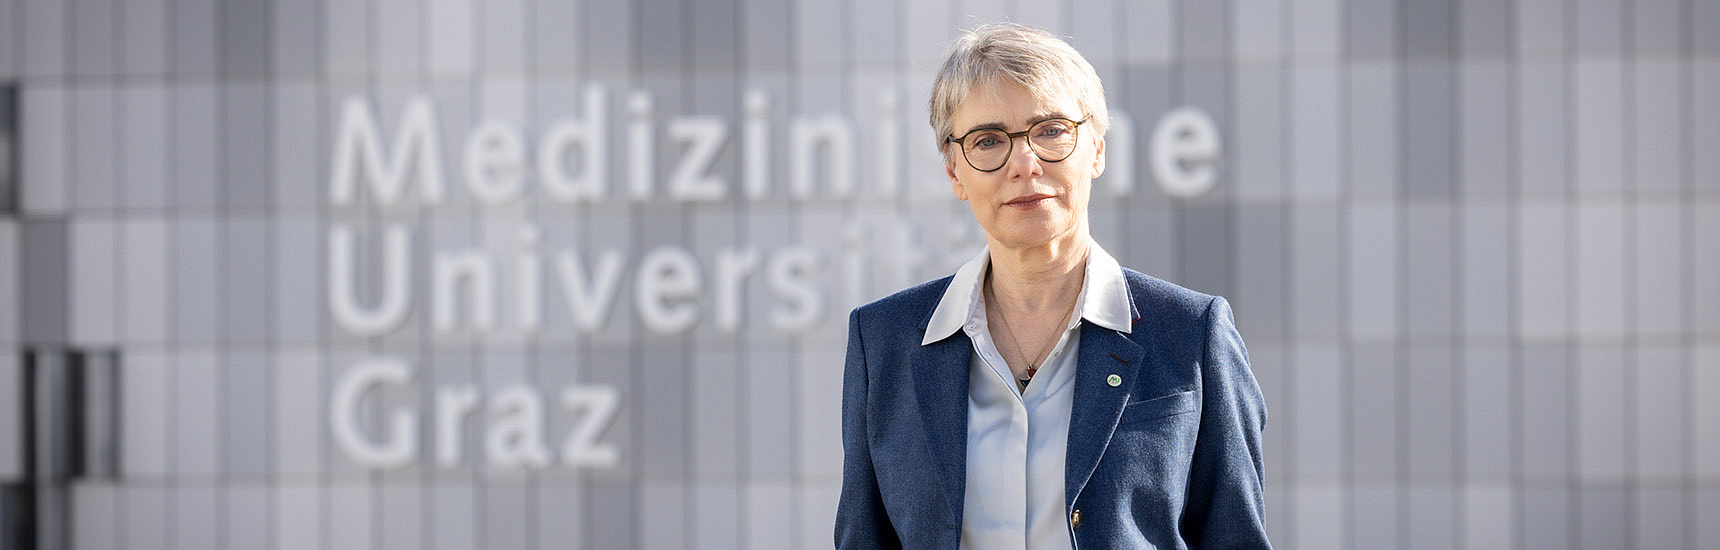 Andrea Kurz ist sein 15.2. neue Rektorin der Med Uni Graz/Foto:Lunghammer